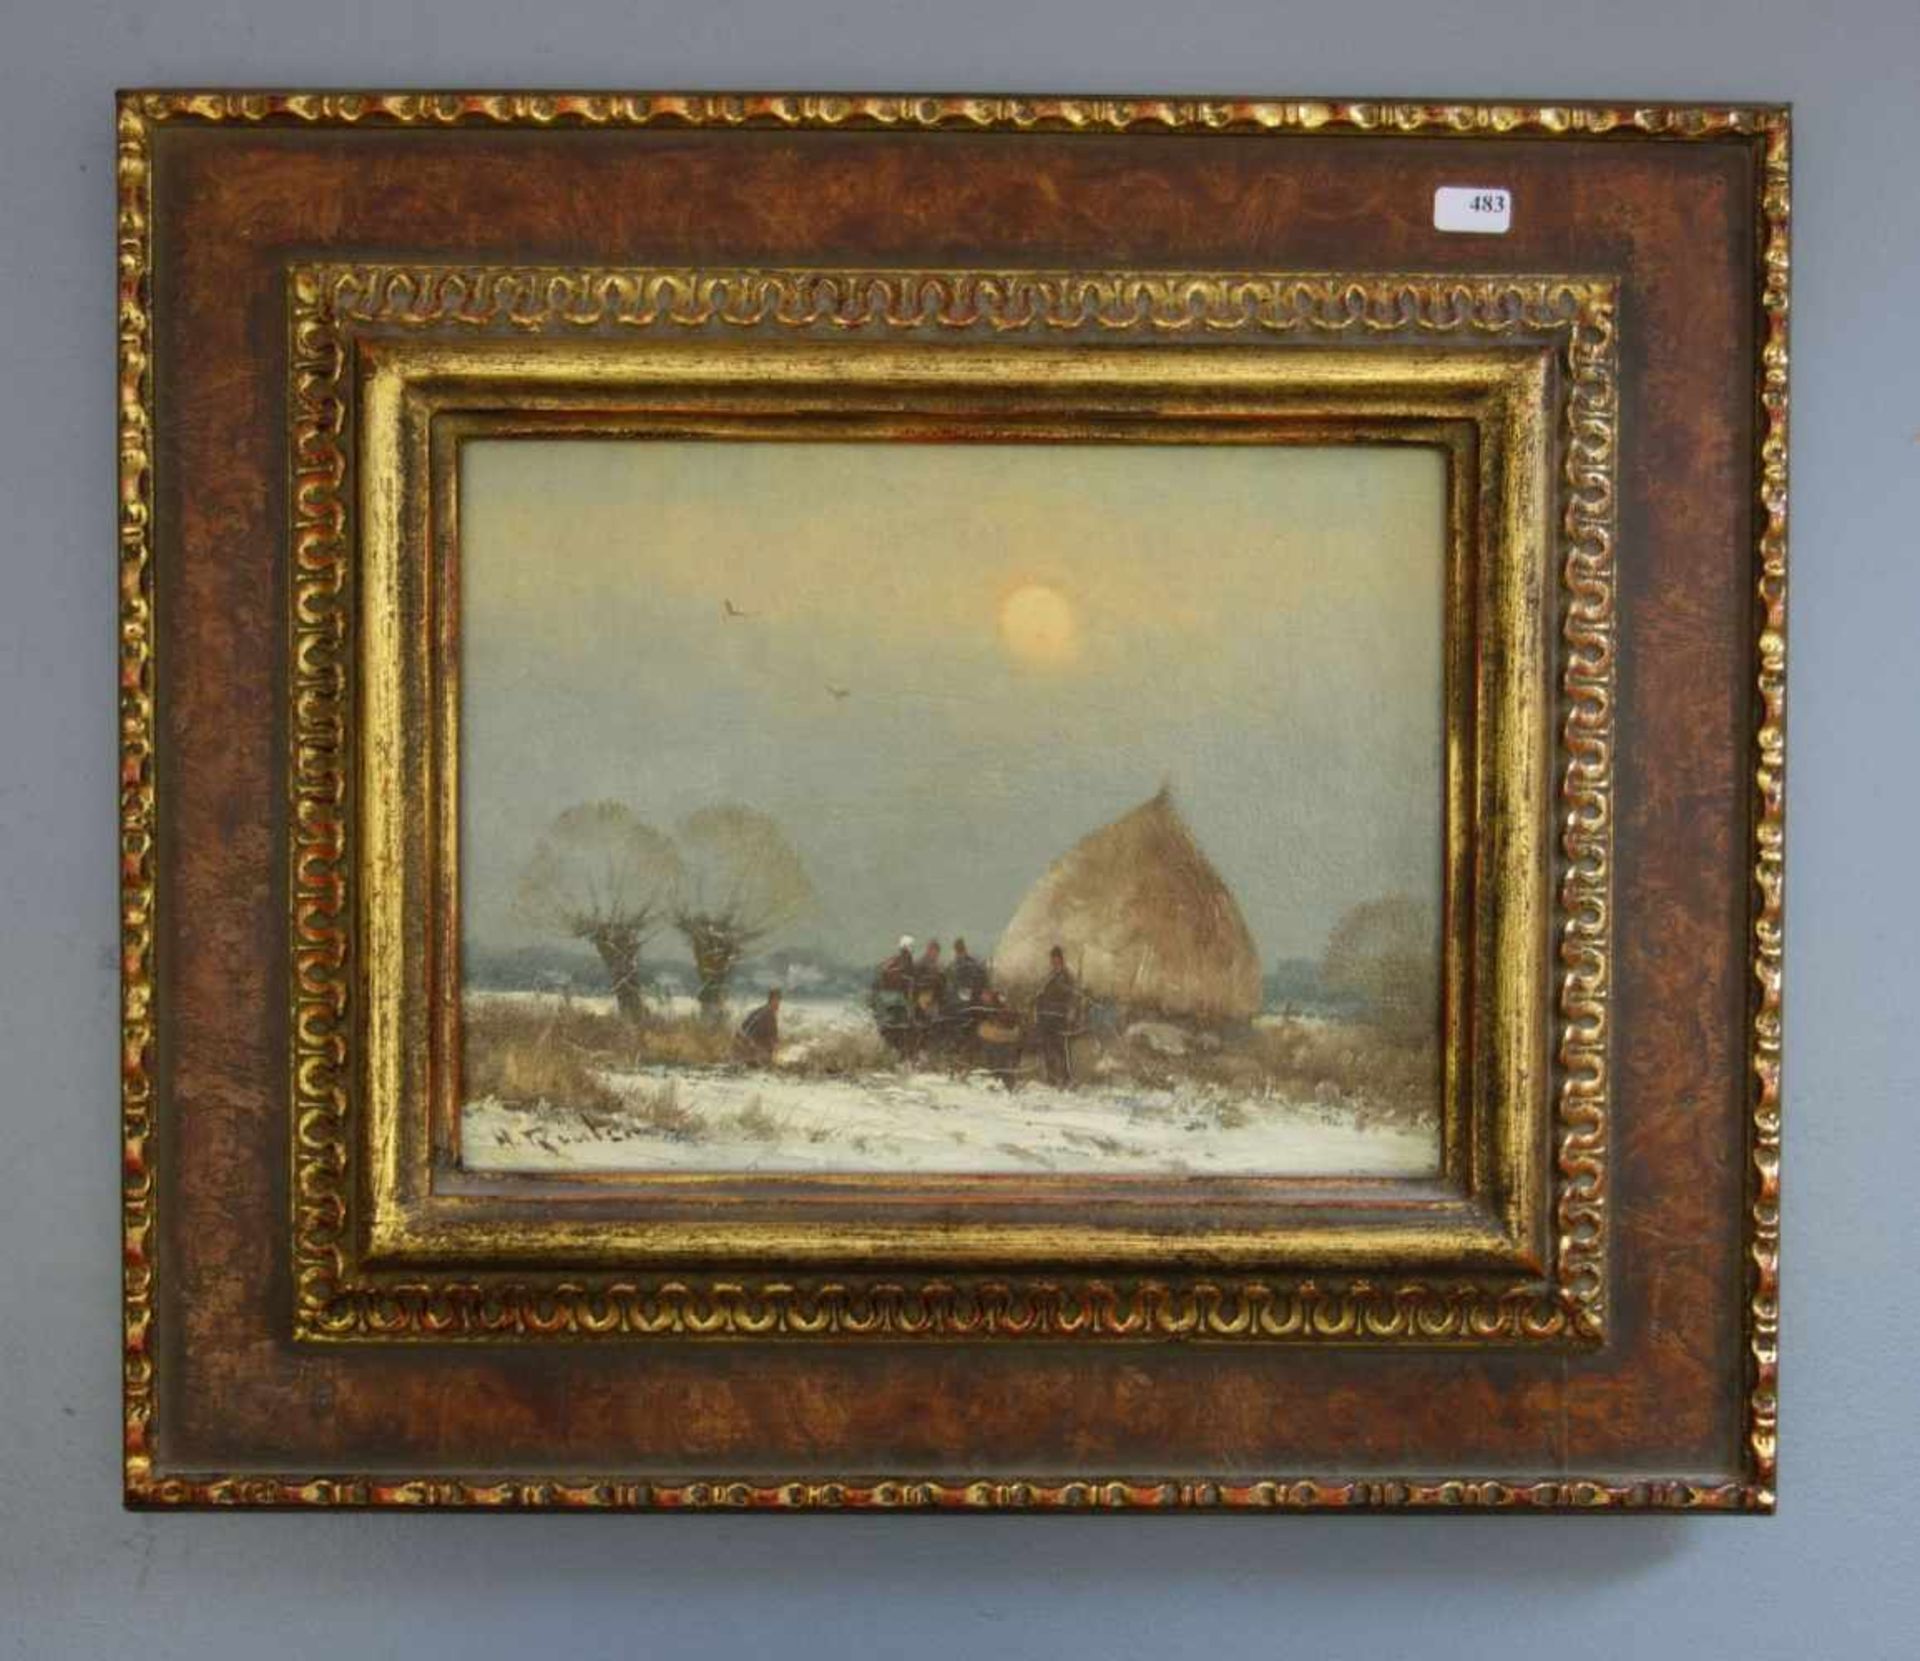 REUTER, HELMUT (Düsseldorf 1913-1985), Gemälde / painting: "Winterliche Landschaft mit